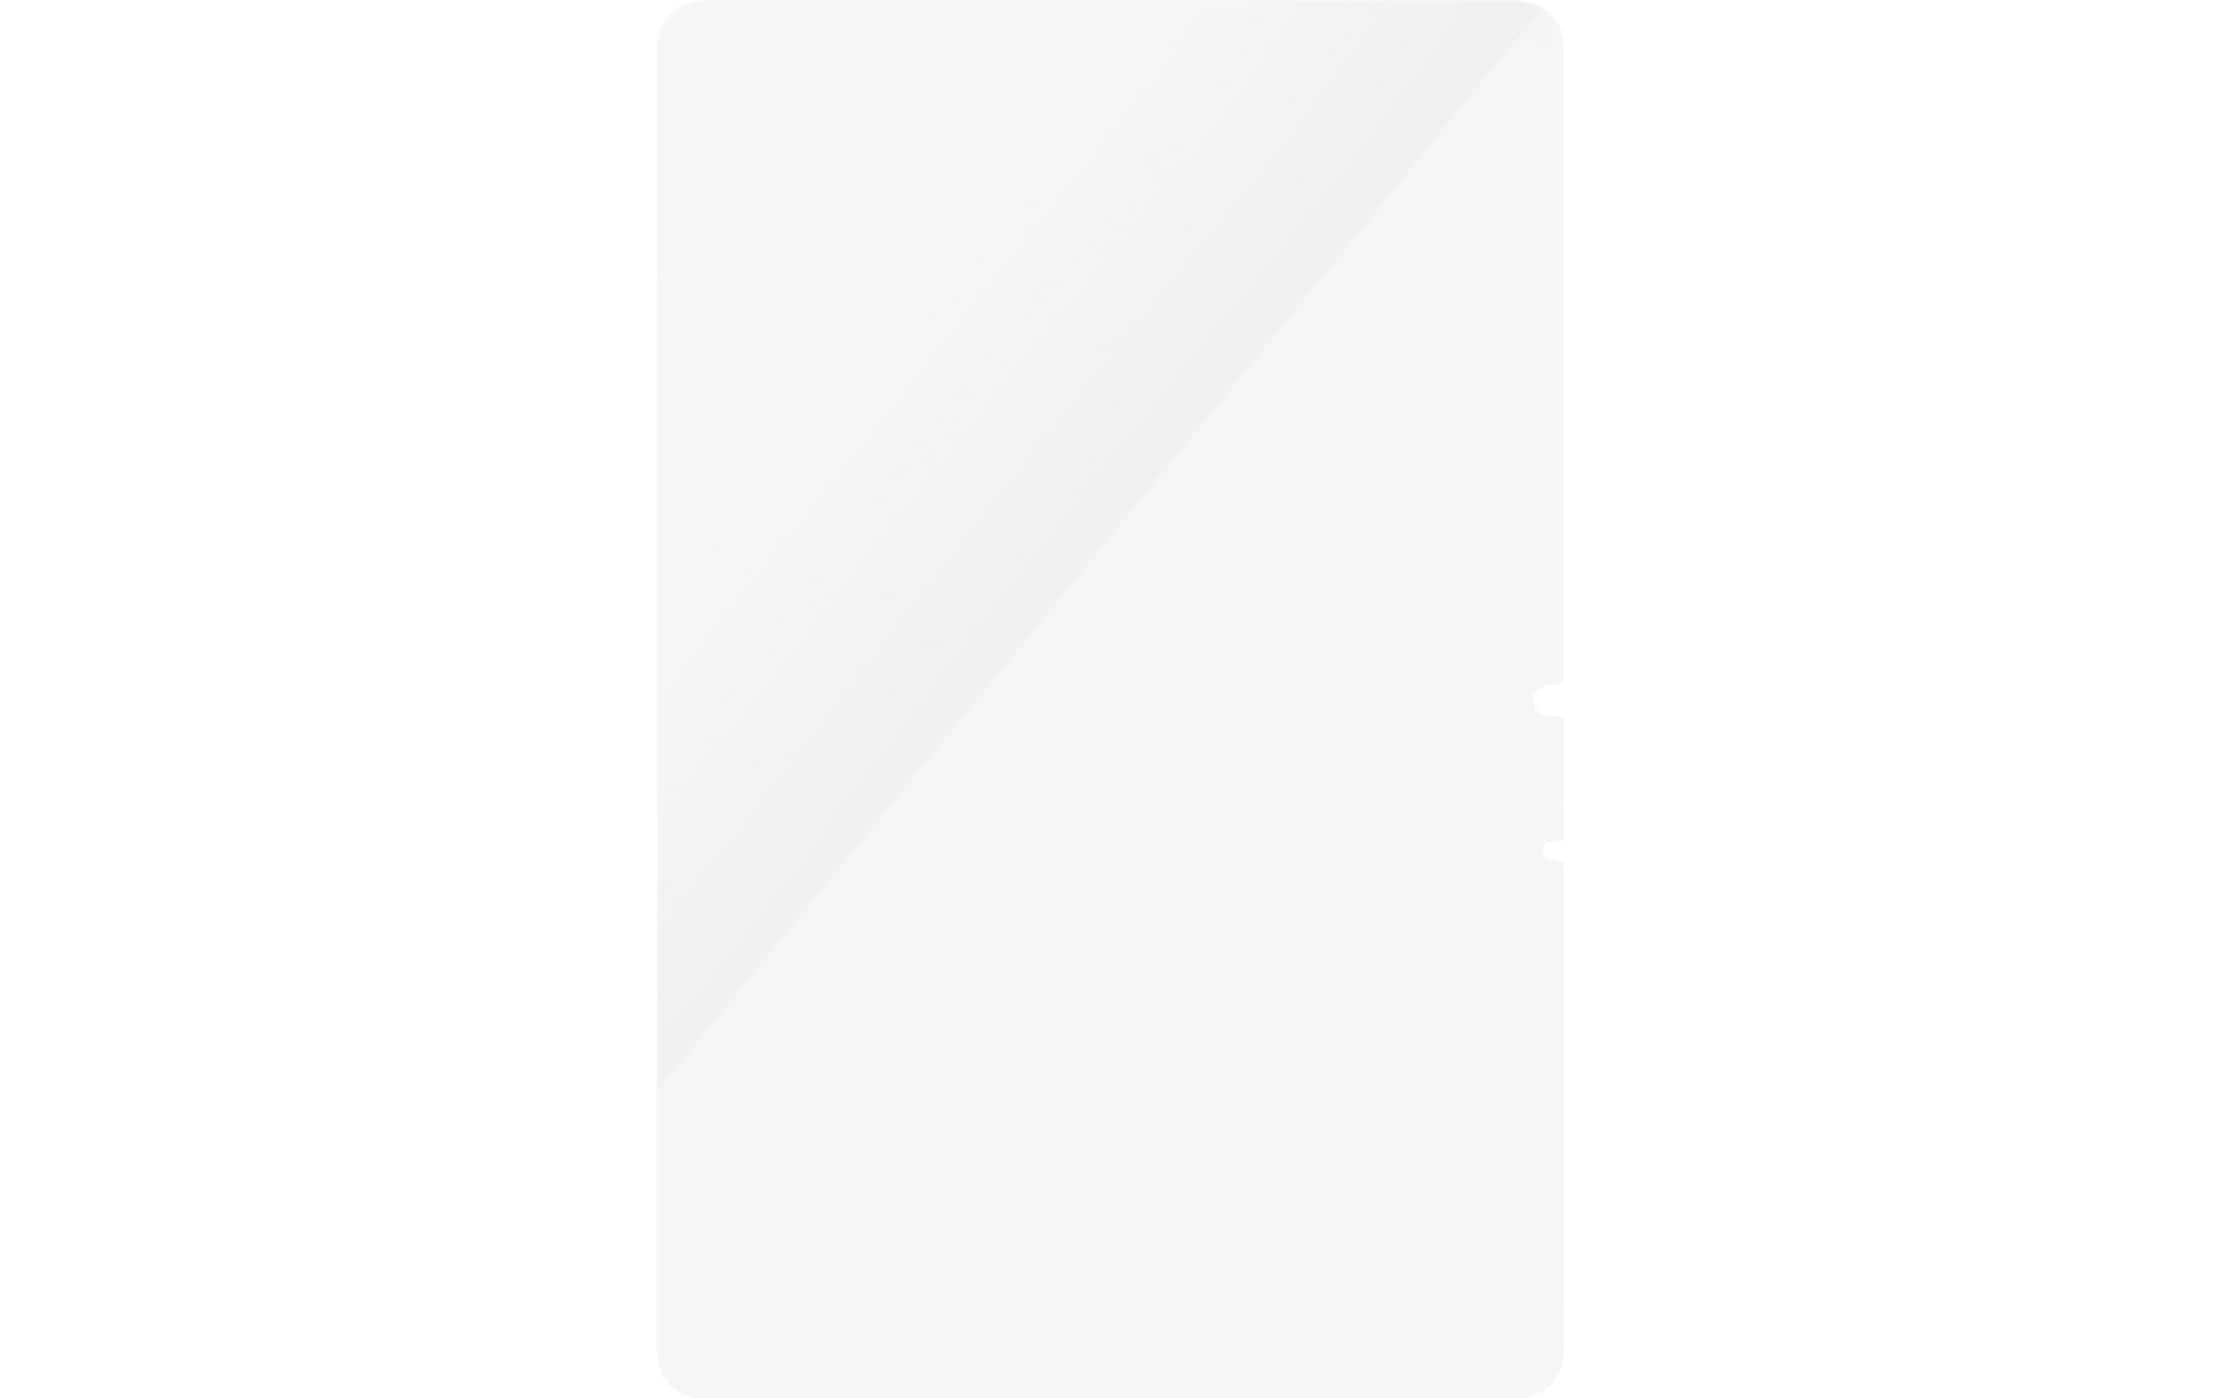 Panzerglass Ultra Wide Fit Galaxy Tab S8/S9